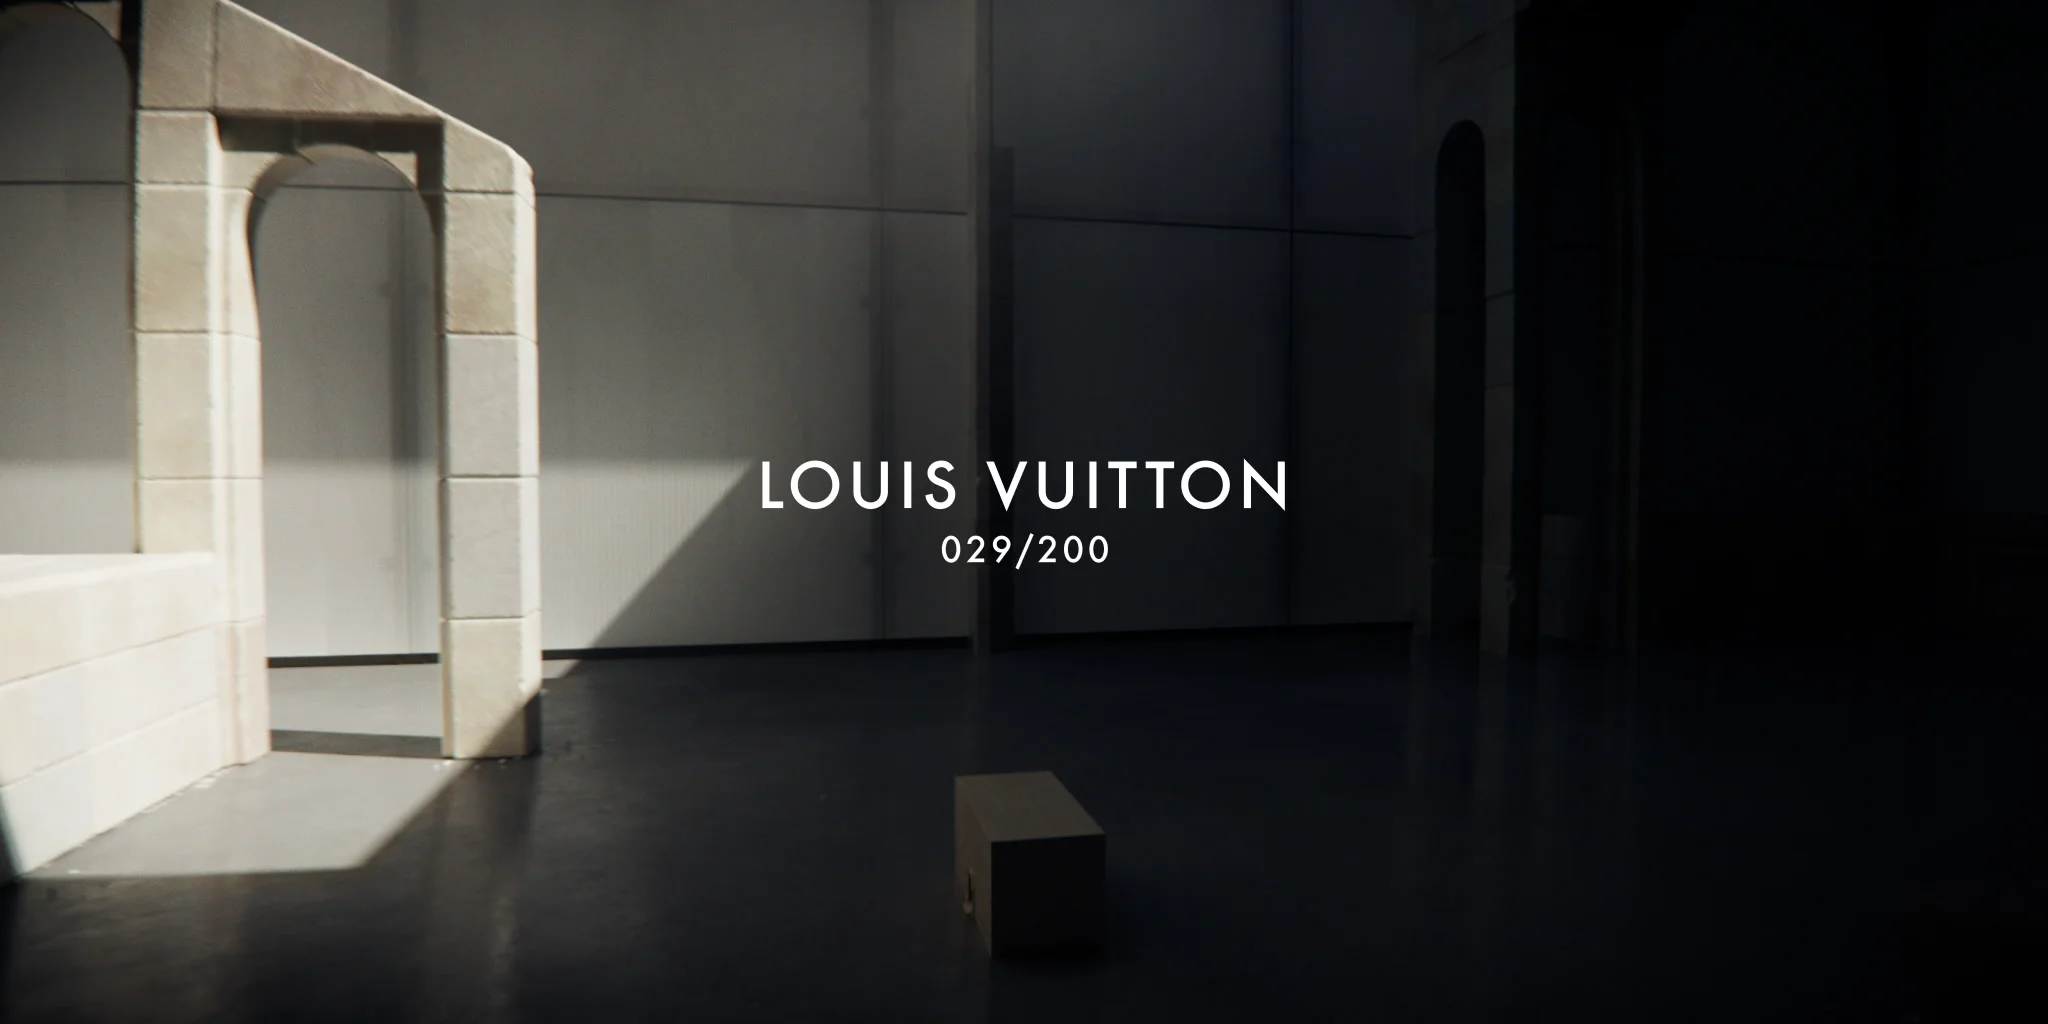 Louis Vuitton  Aesthetic pictures, Louis vuitton, Louis